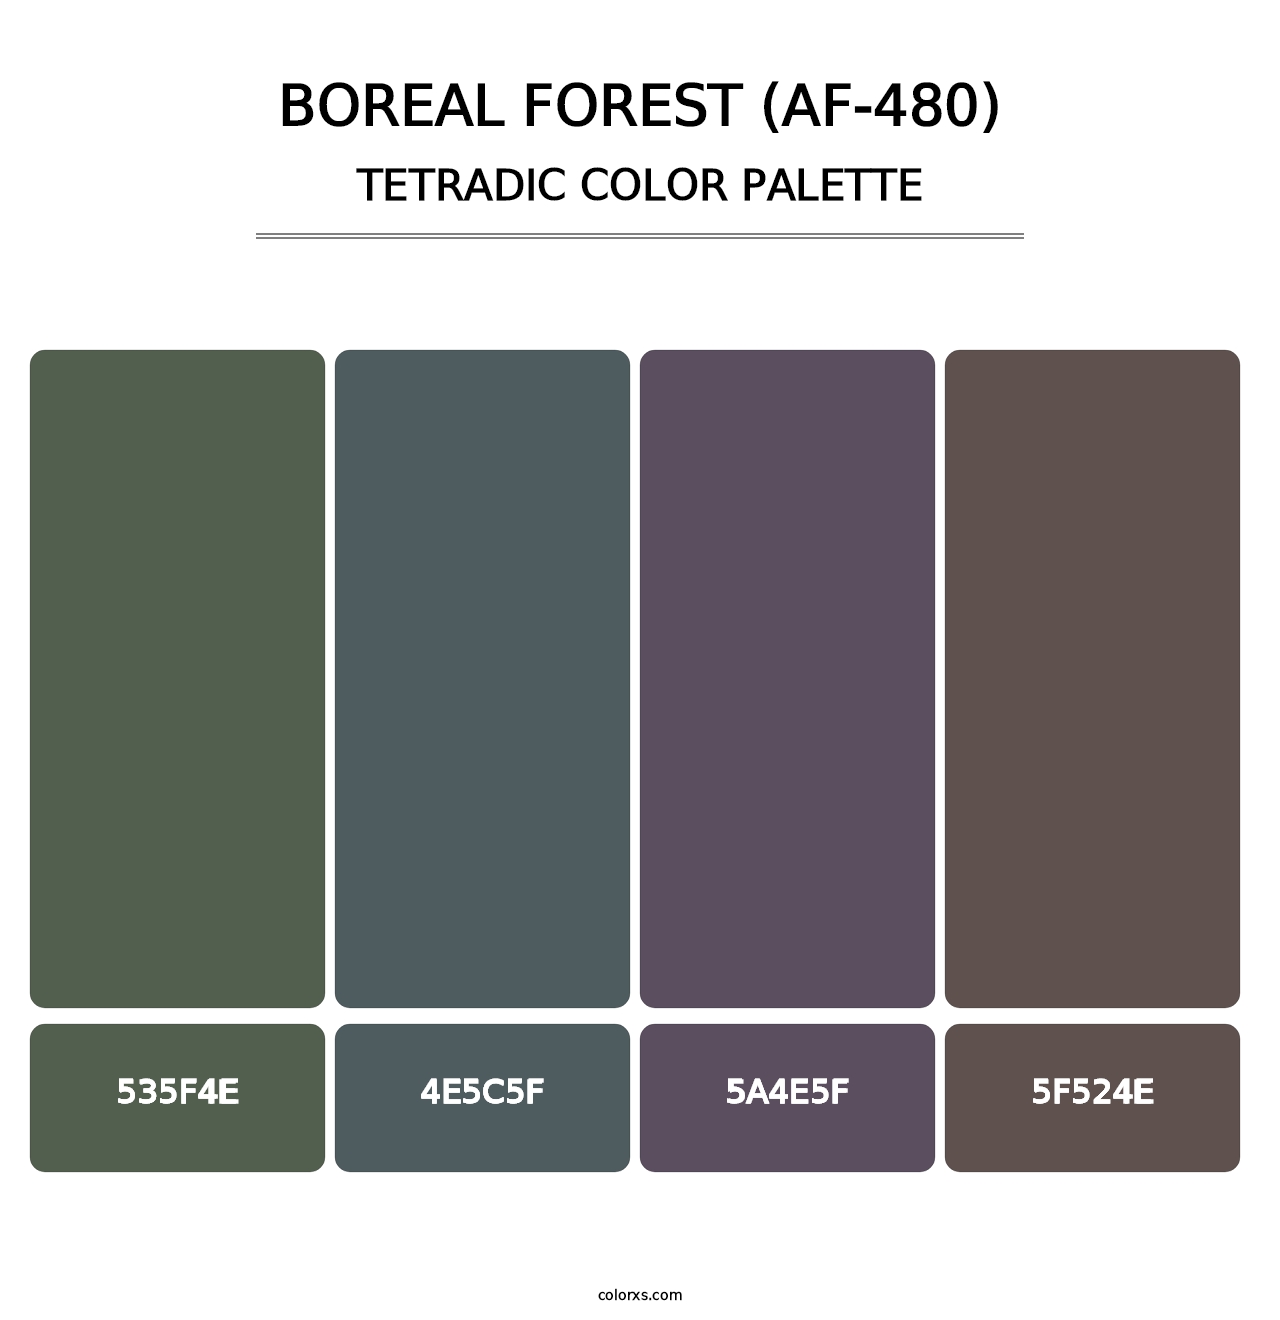 Boreal Forest (AF-480) - Tetradic Color Palette